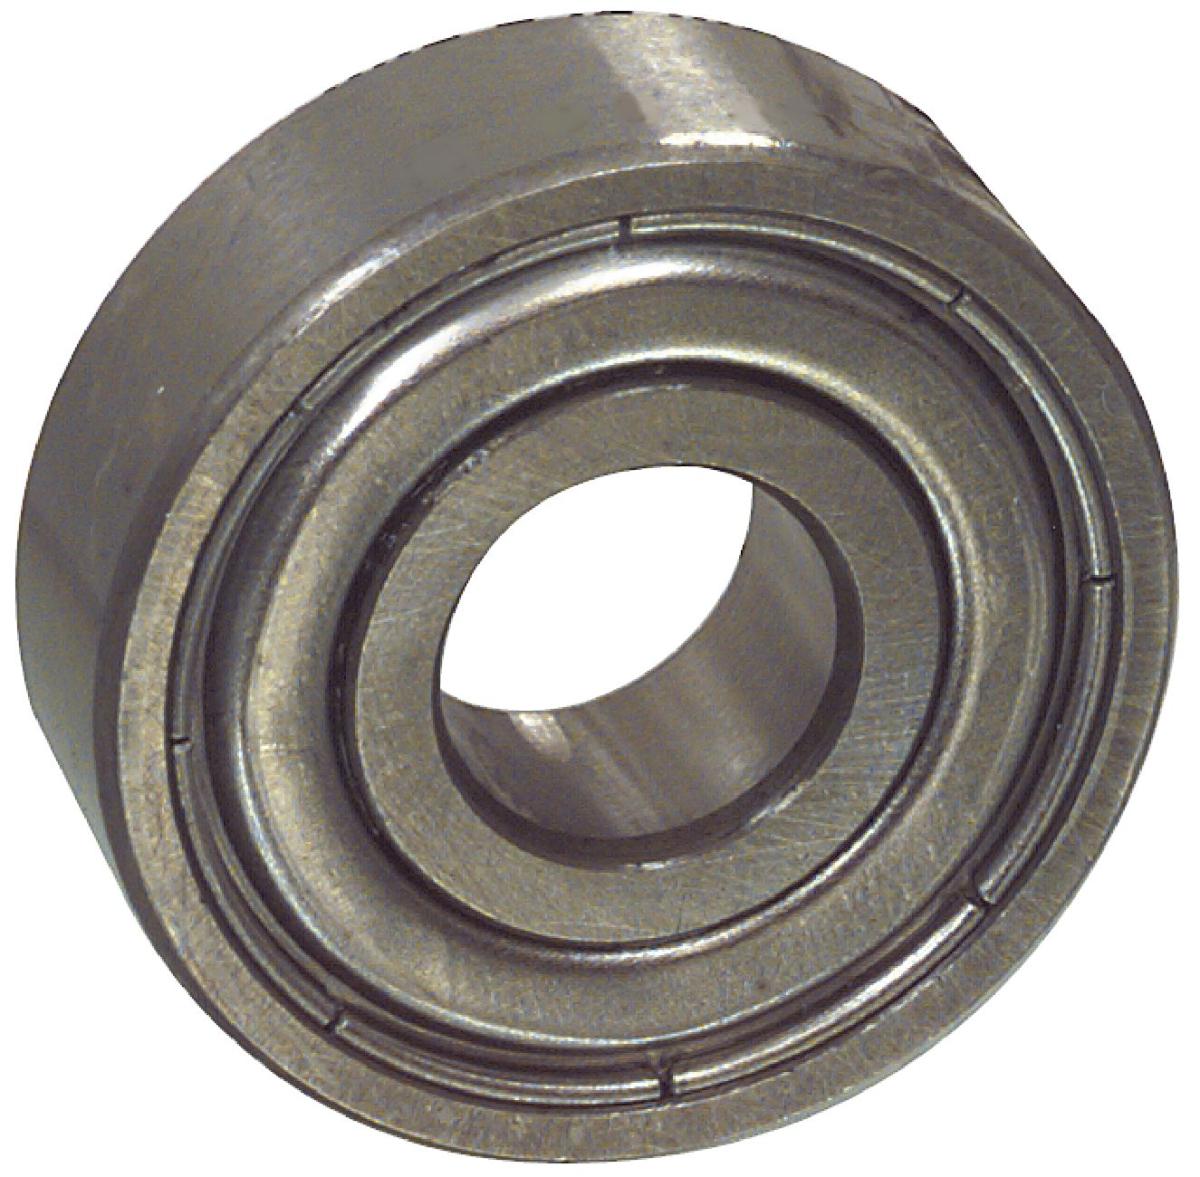 Hq ball bearing